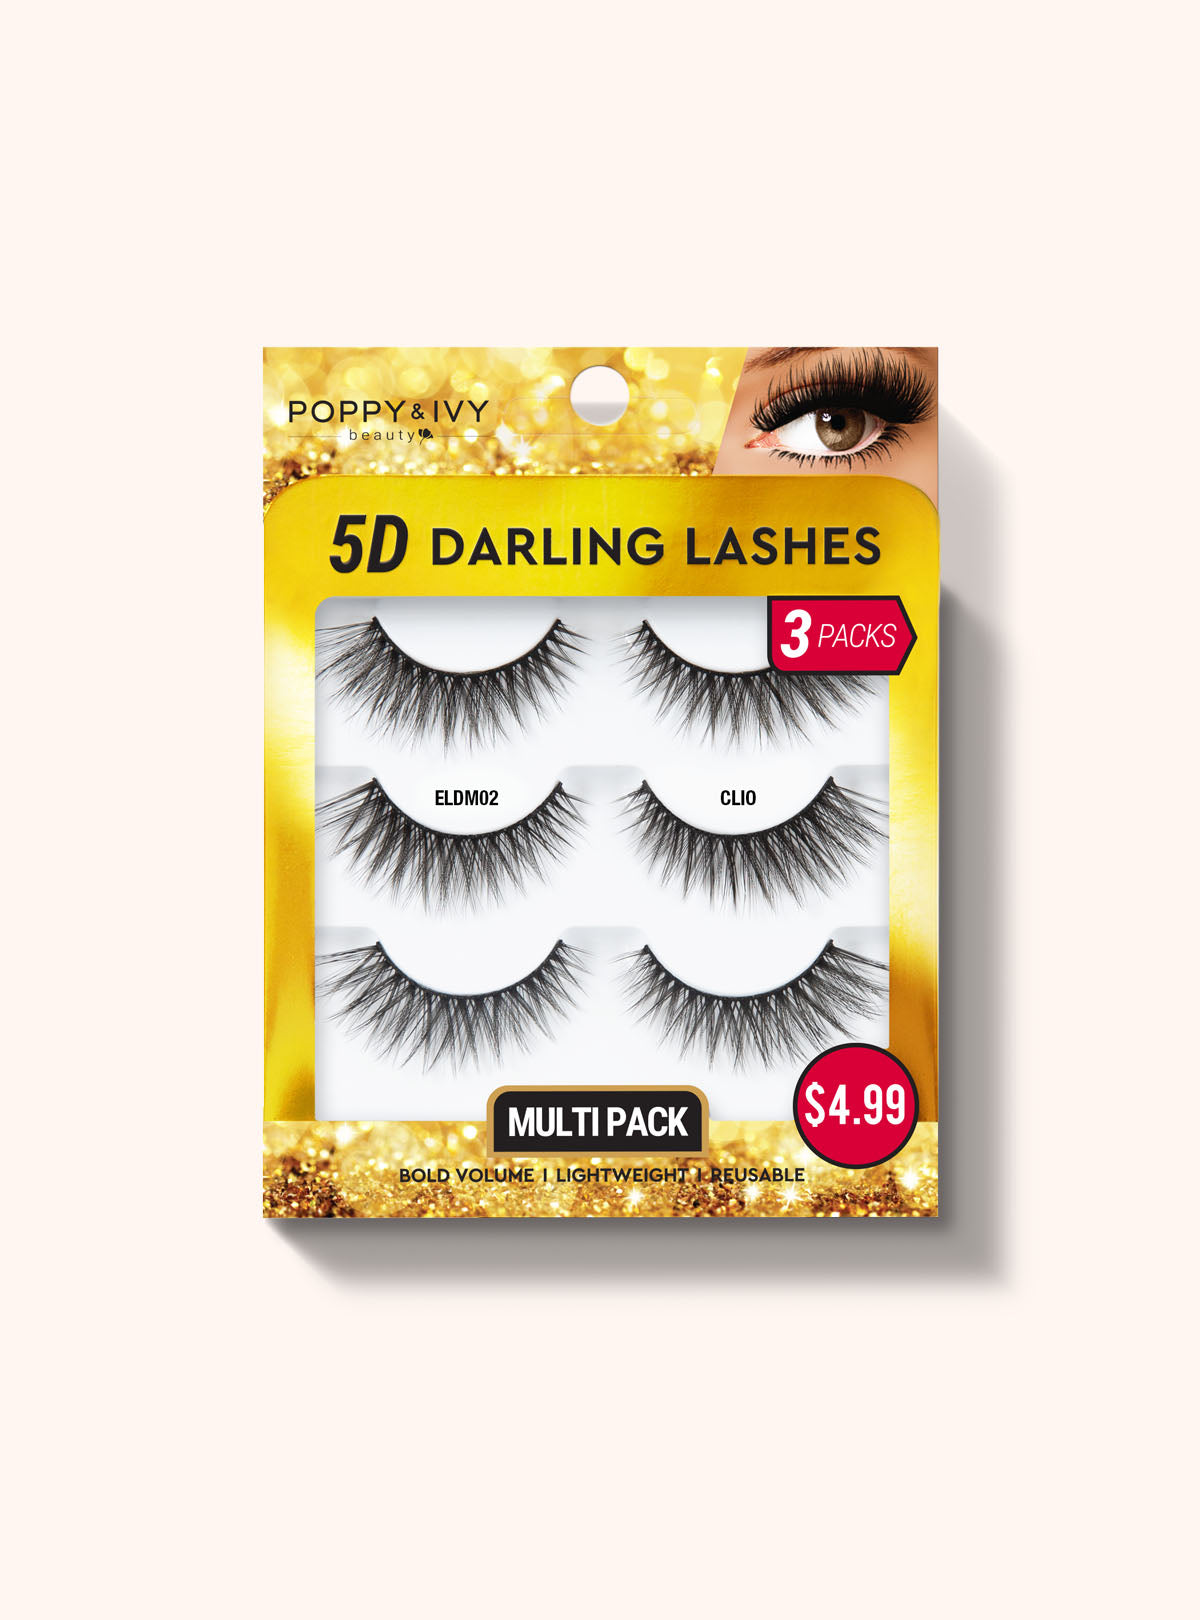 5D Darling Lashes - 3 Pairs - ELDM02 CLIO